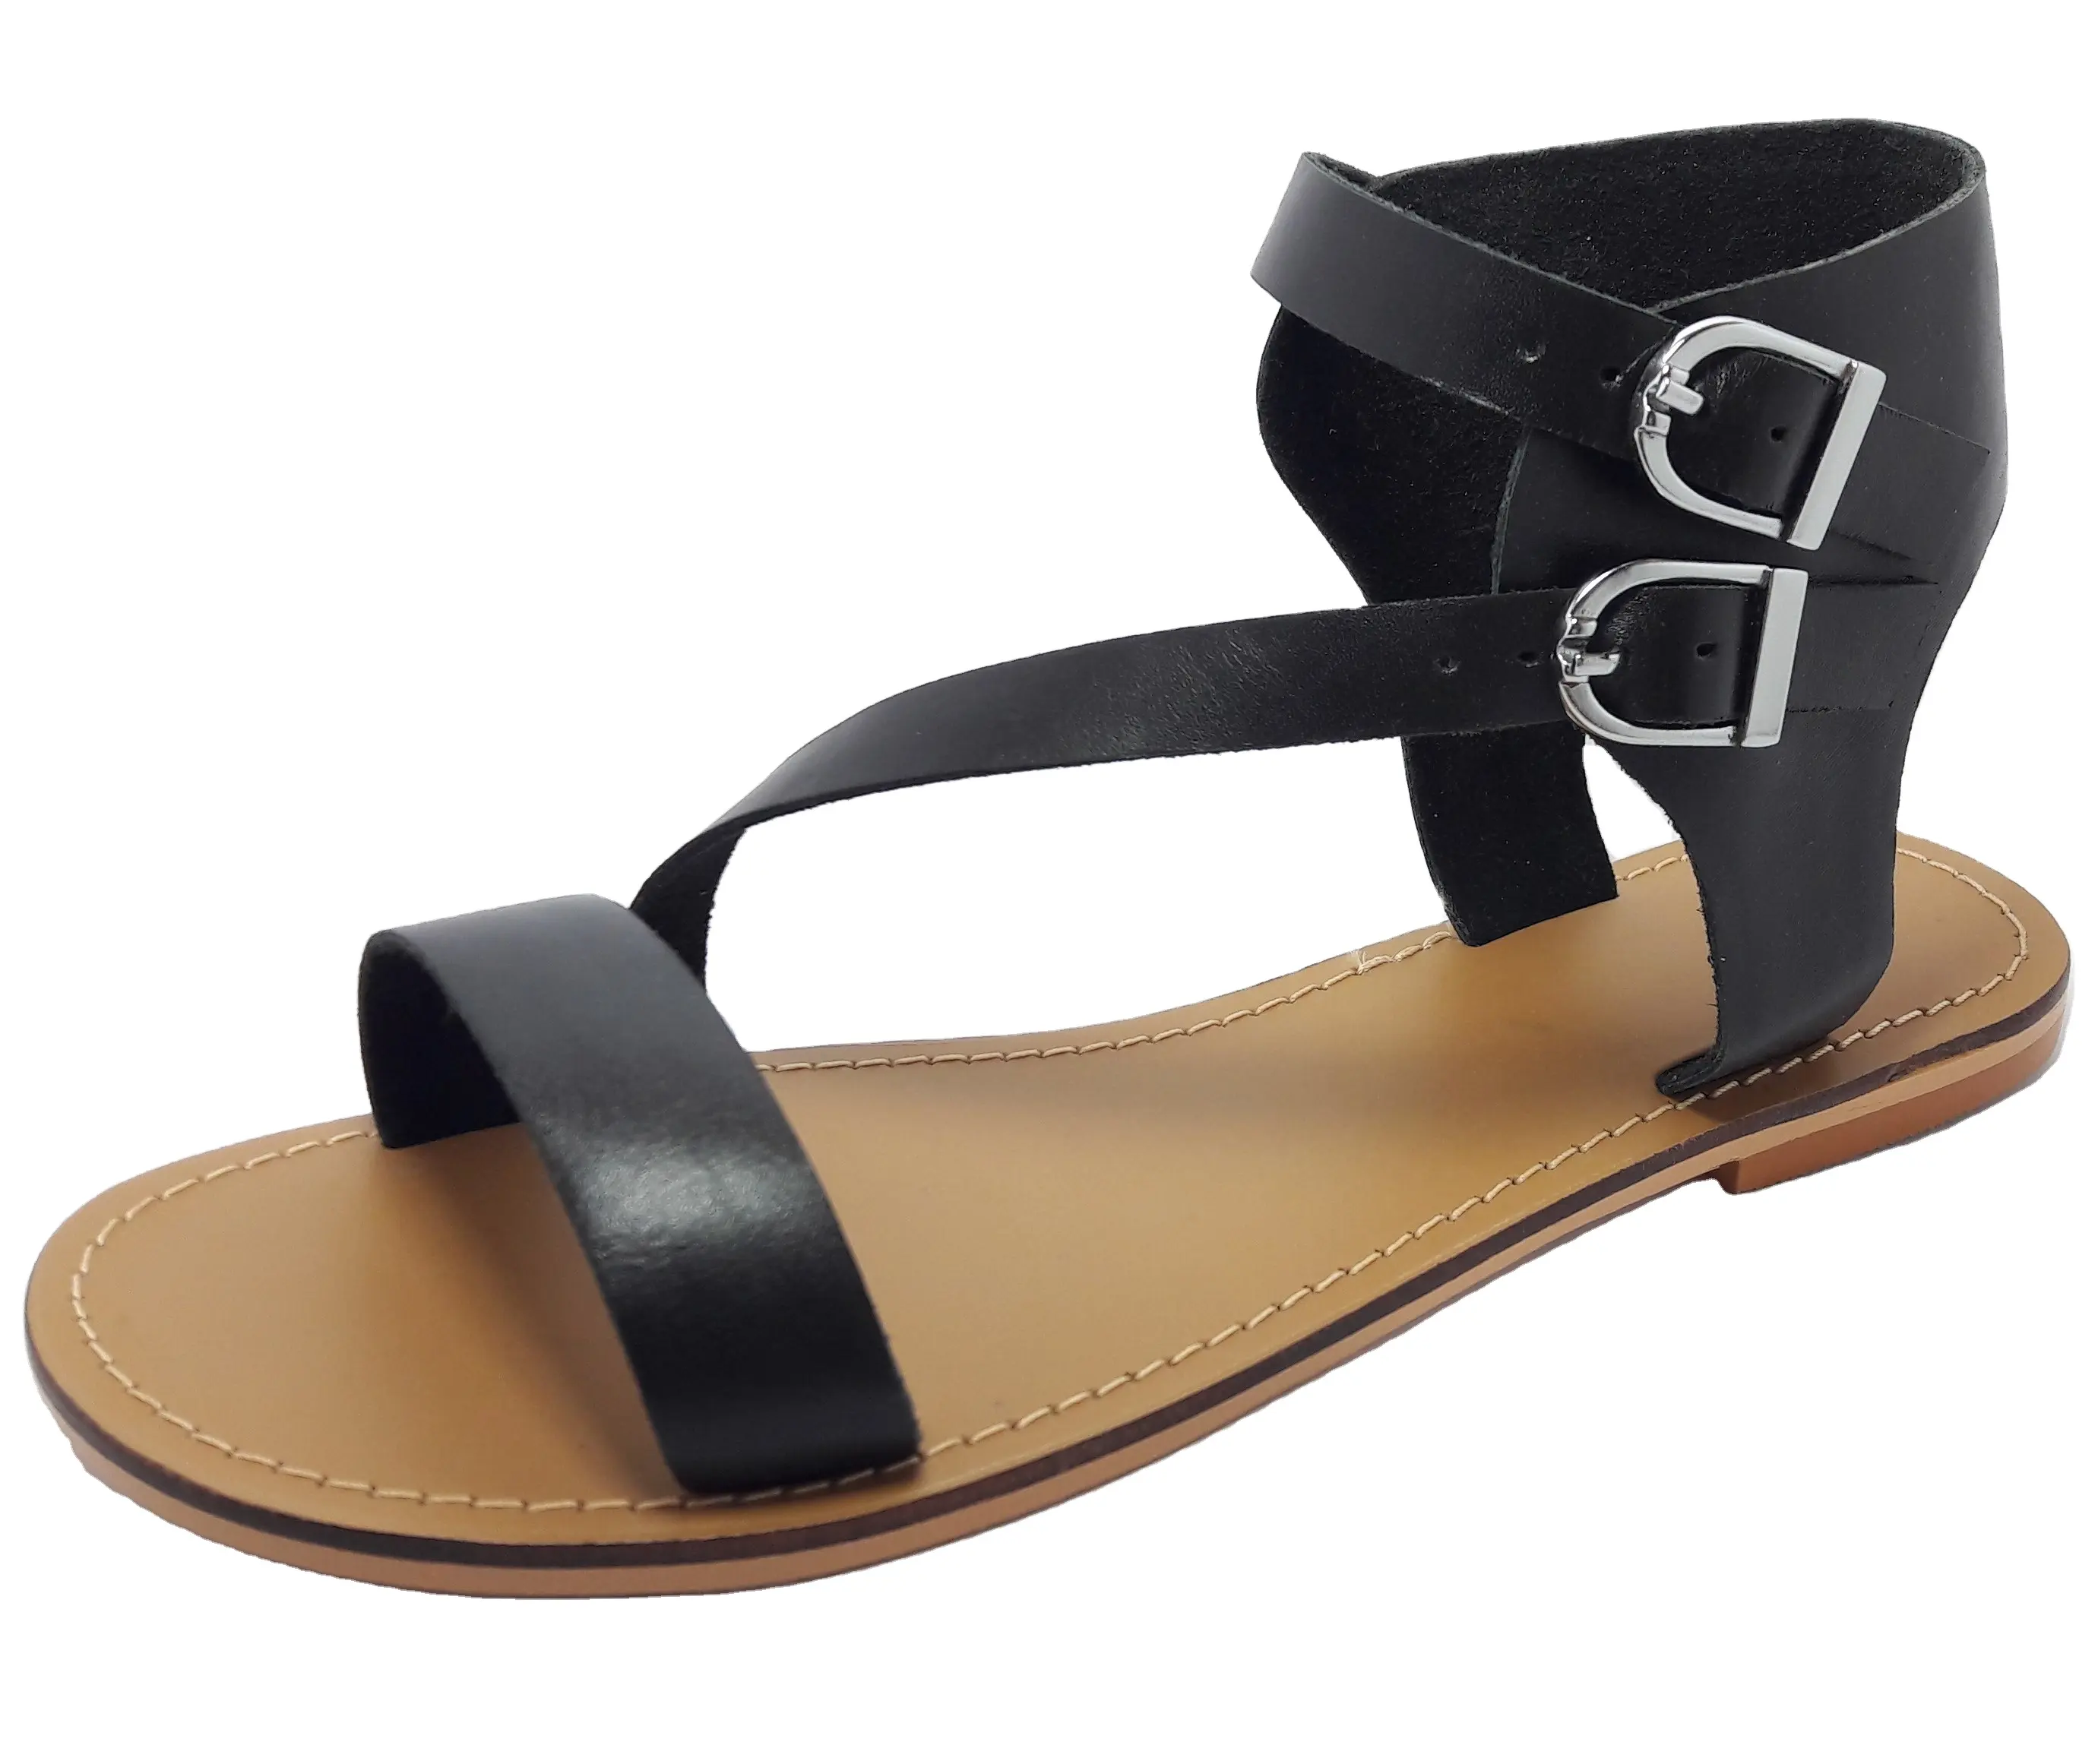 Sandalia con correa de cuero para mujer, sandalia con hebilla y parte trasera cerrada, diseño sólido, de alta calidad, duradera